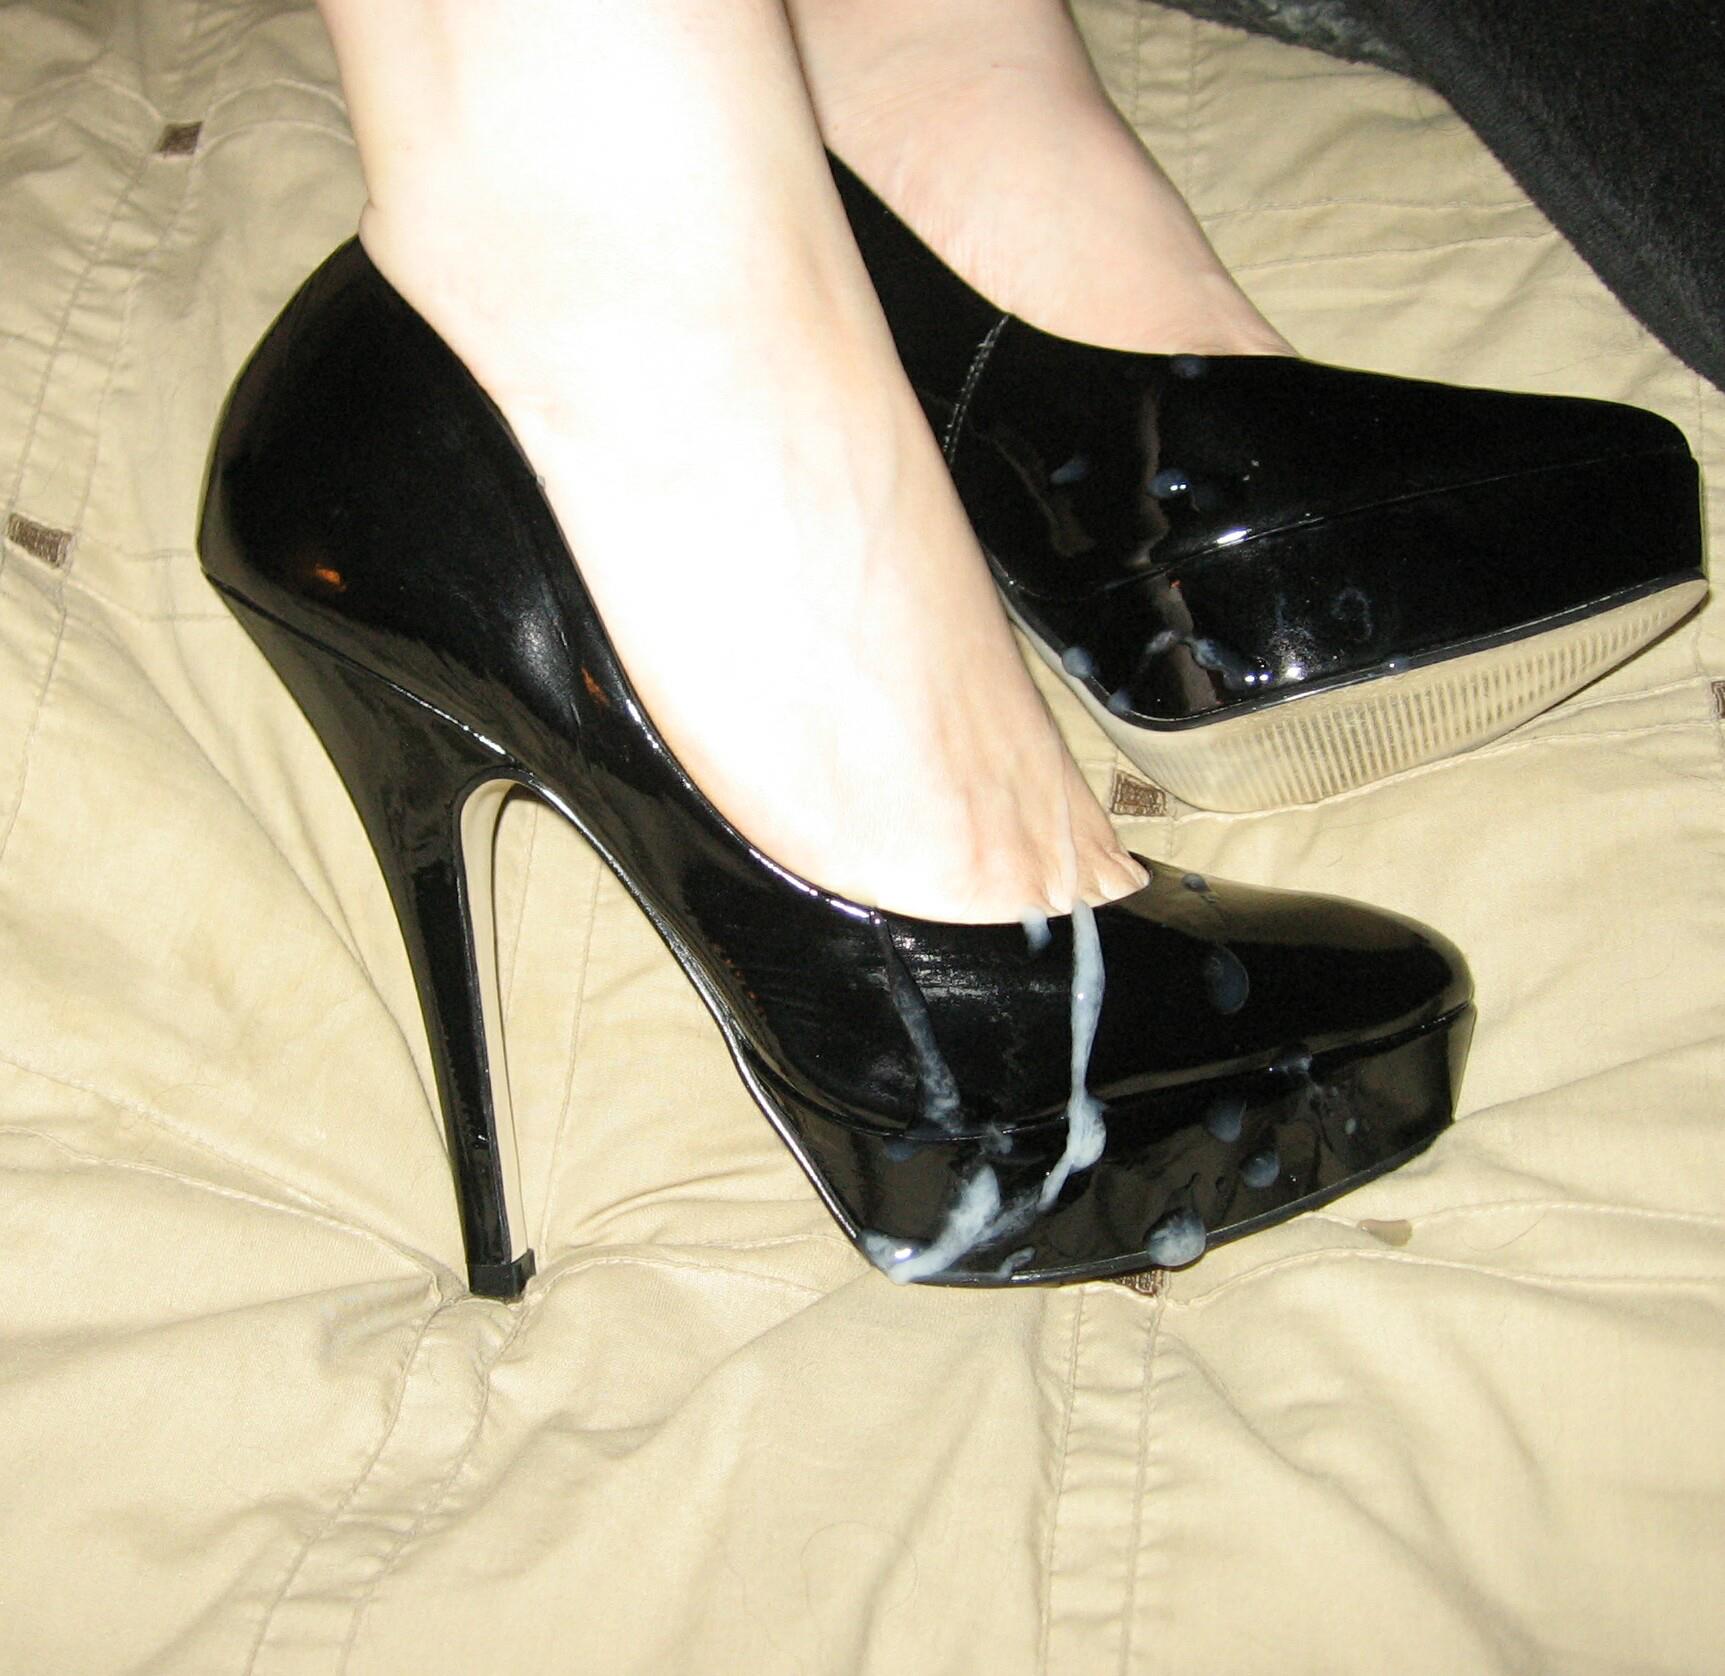 High heels cum